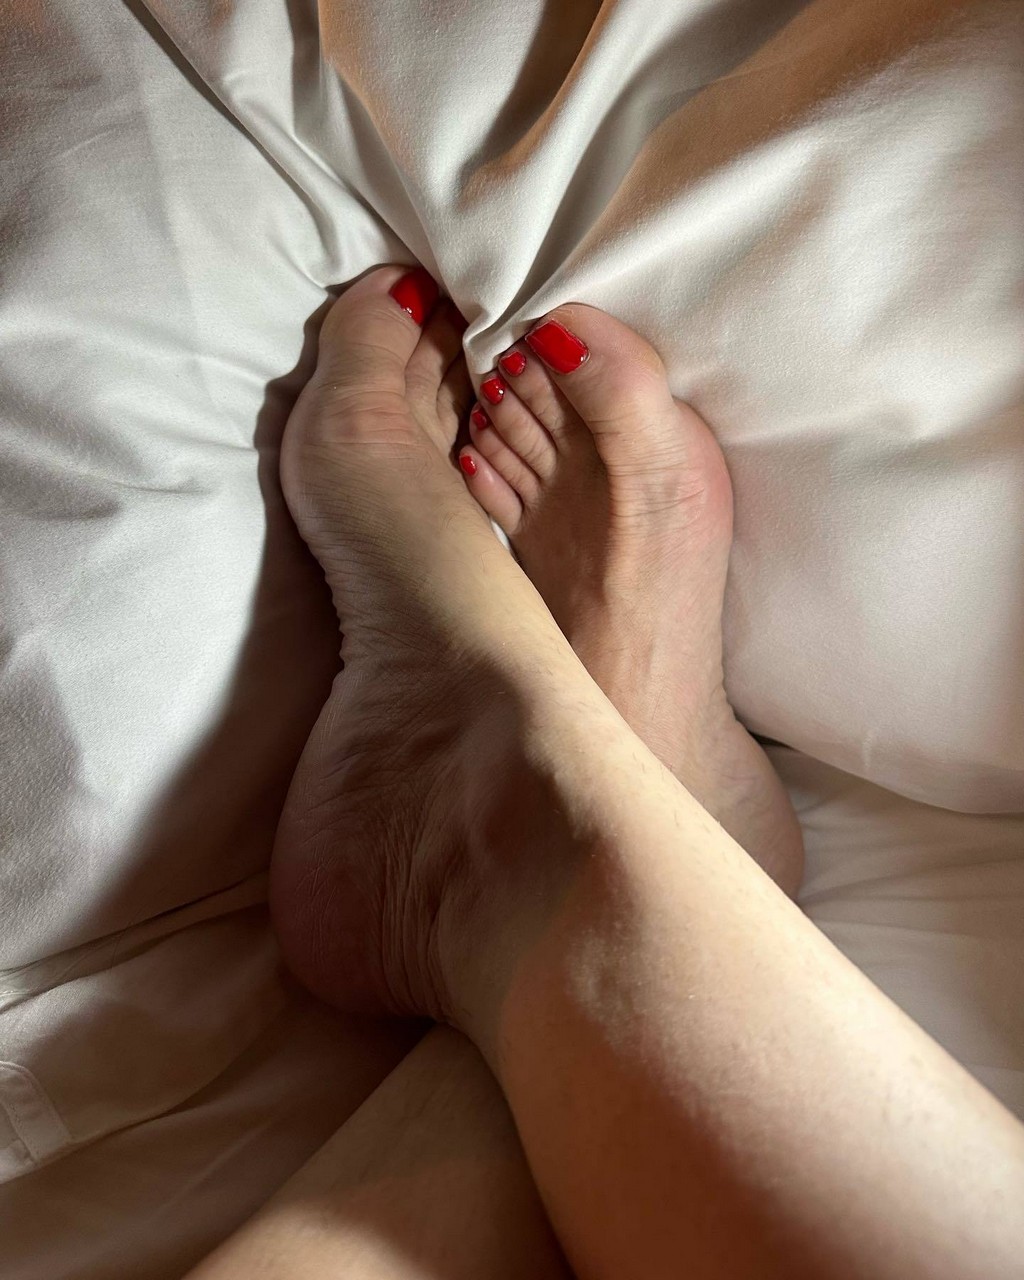 Alessandra Negrini Feet